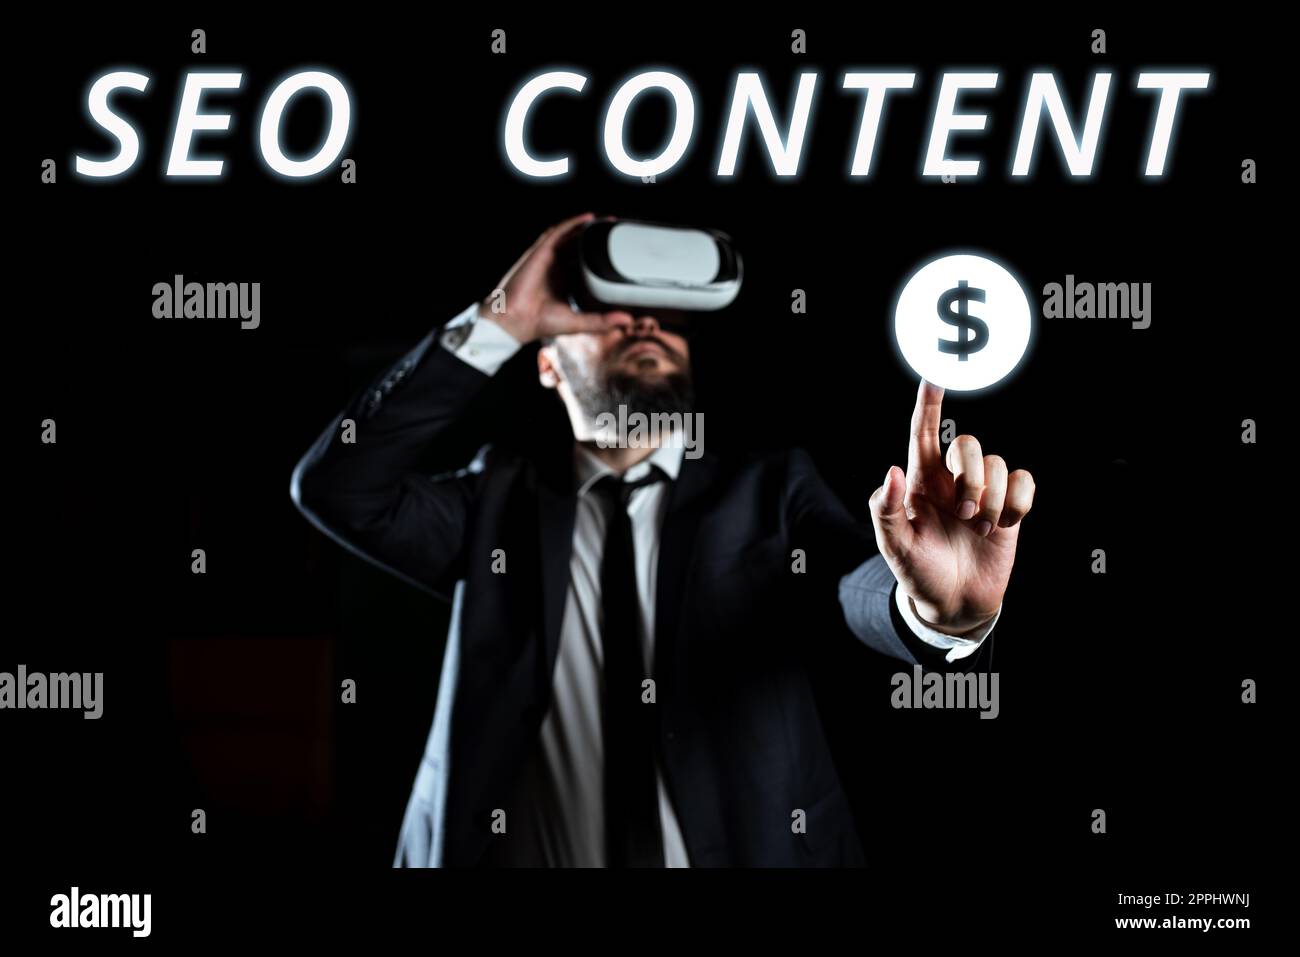 Affiche affichant le contenu Seo. Présentation de l'entreprise création de contenu qui aide les pages Web à se classer haut dans la recherche Banque D'Images